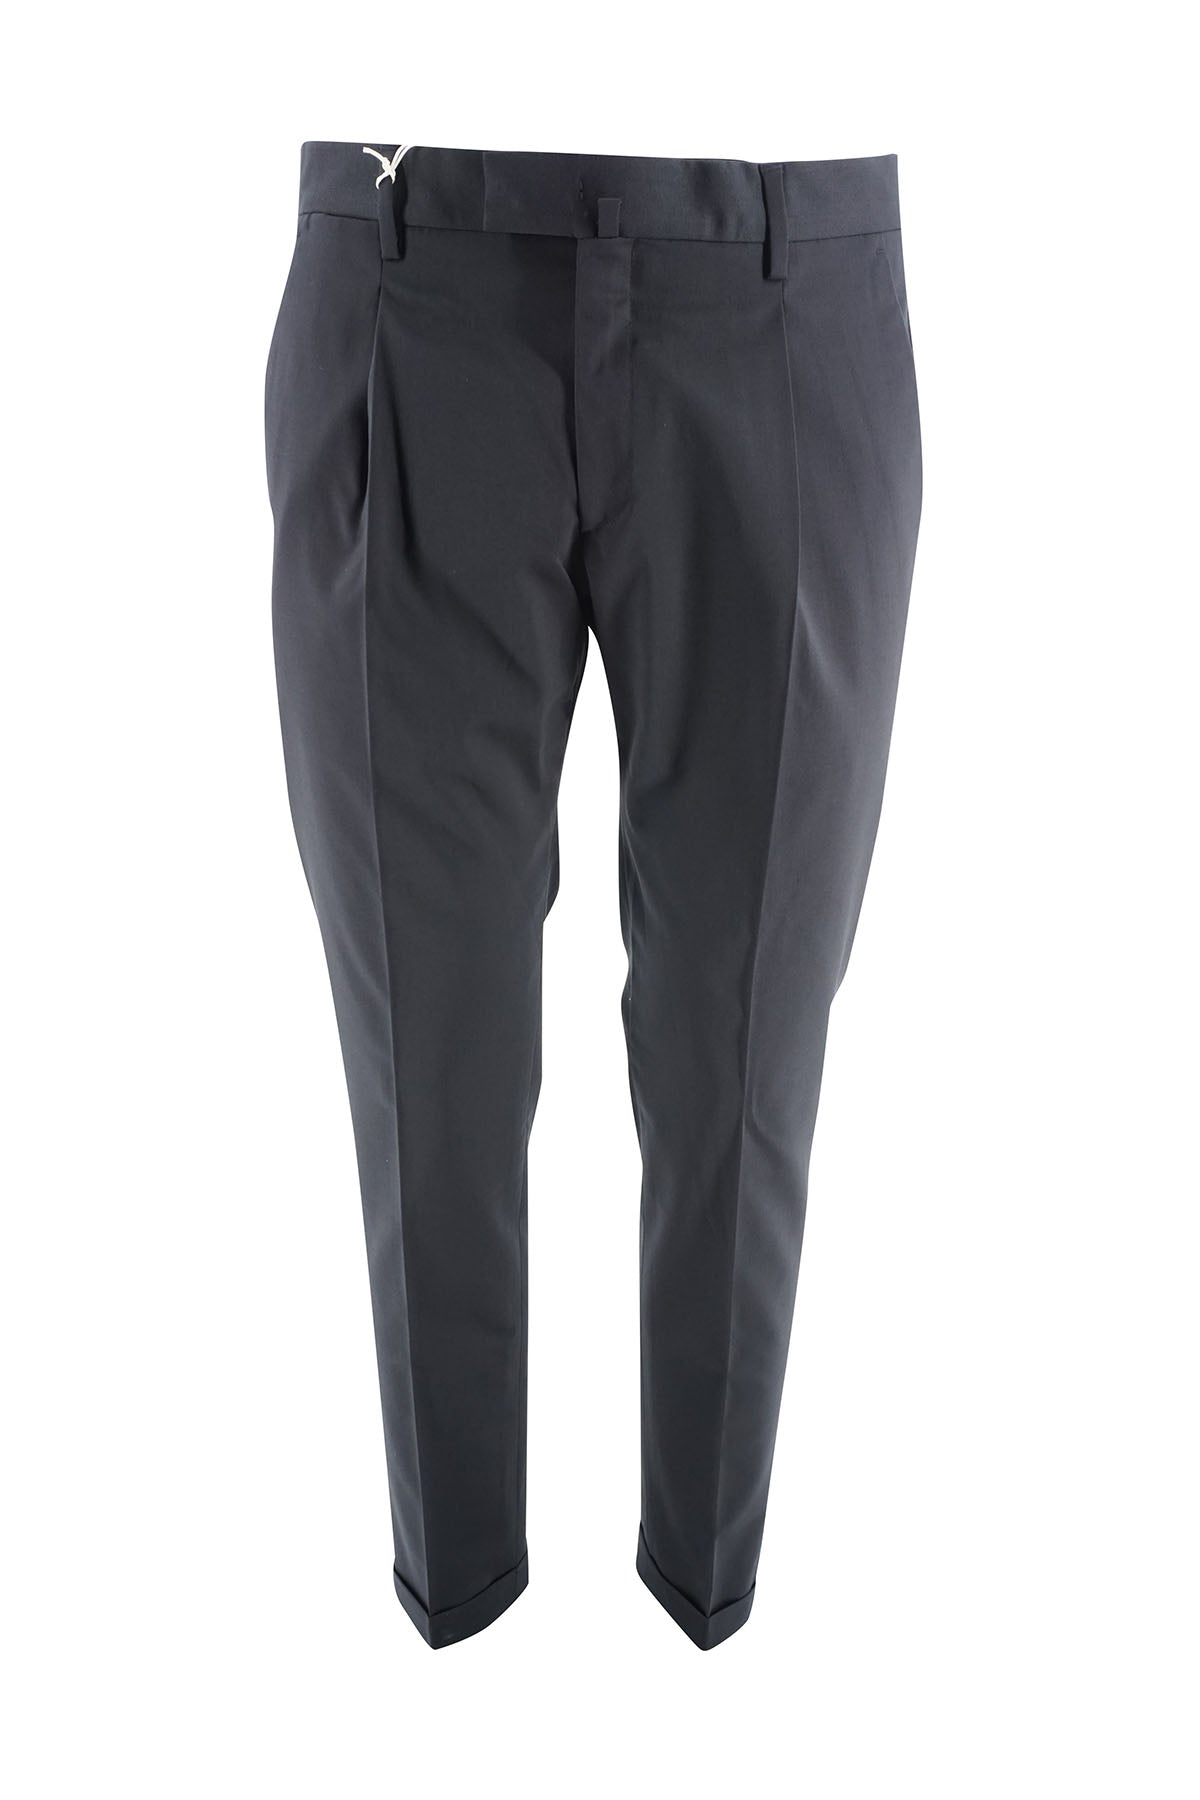 Pantalone Briglia Slim Fit / Nero - Ideal Moda